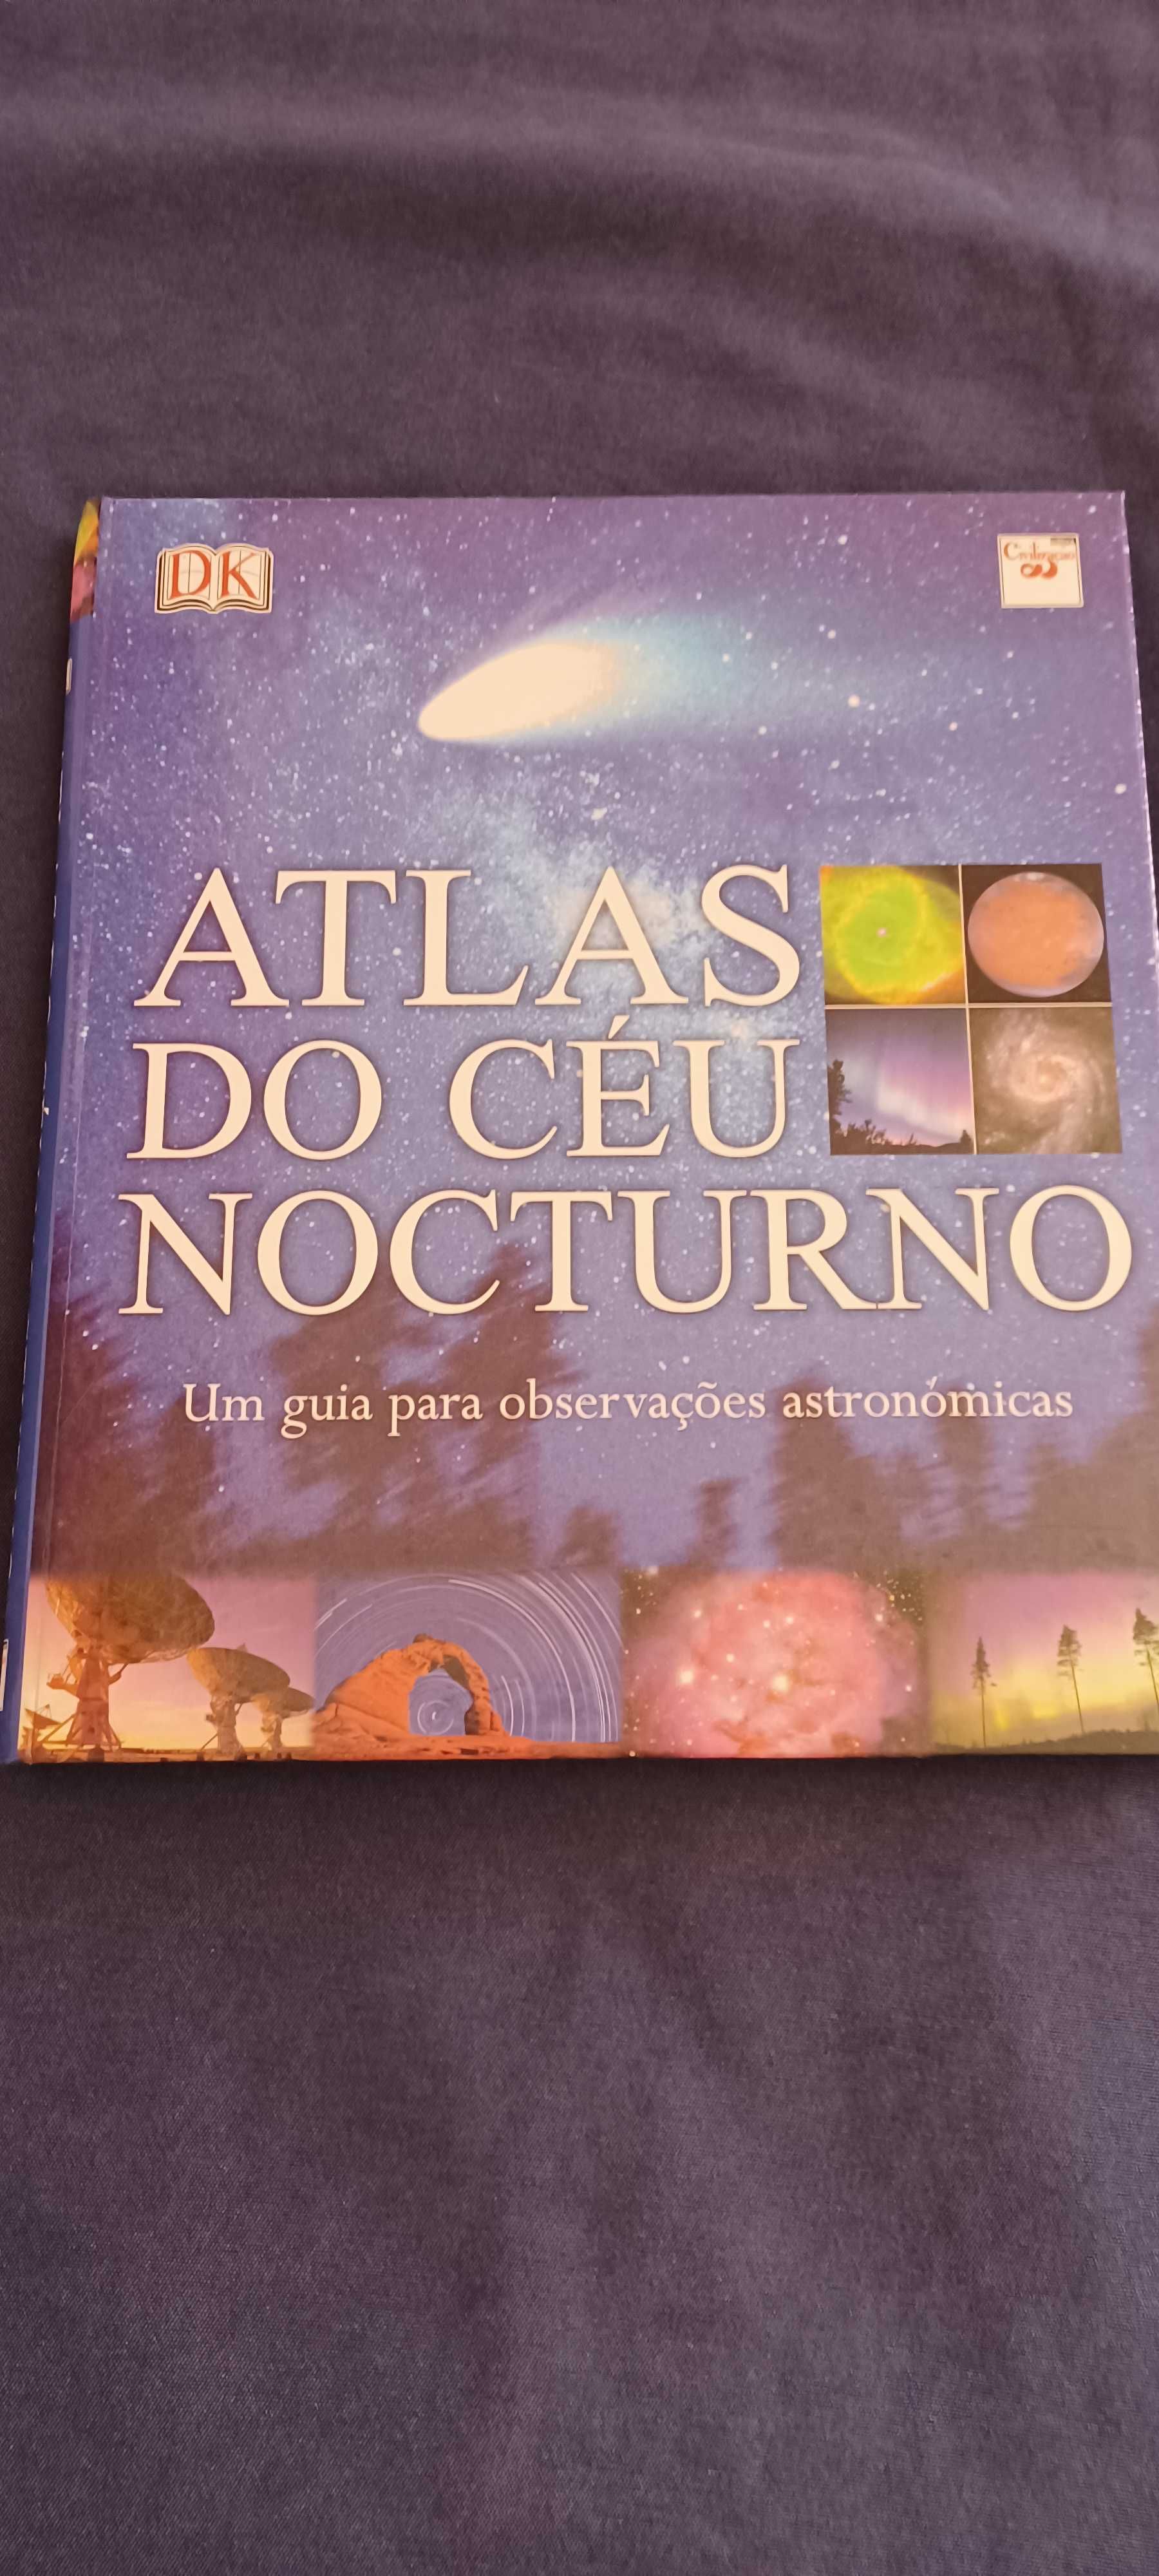 Atlas do Céu Nocturno. DK.